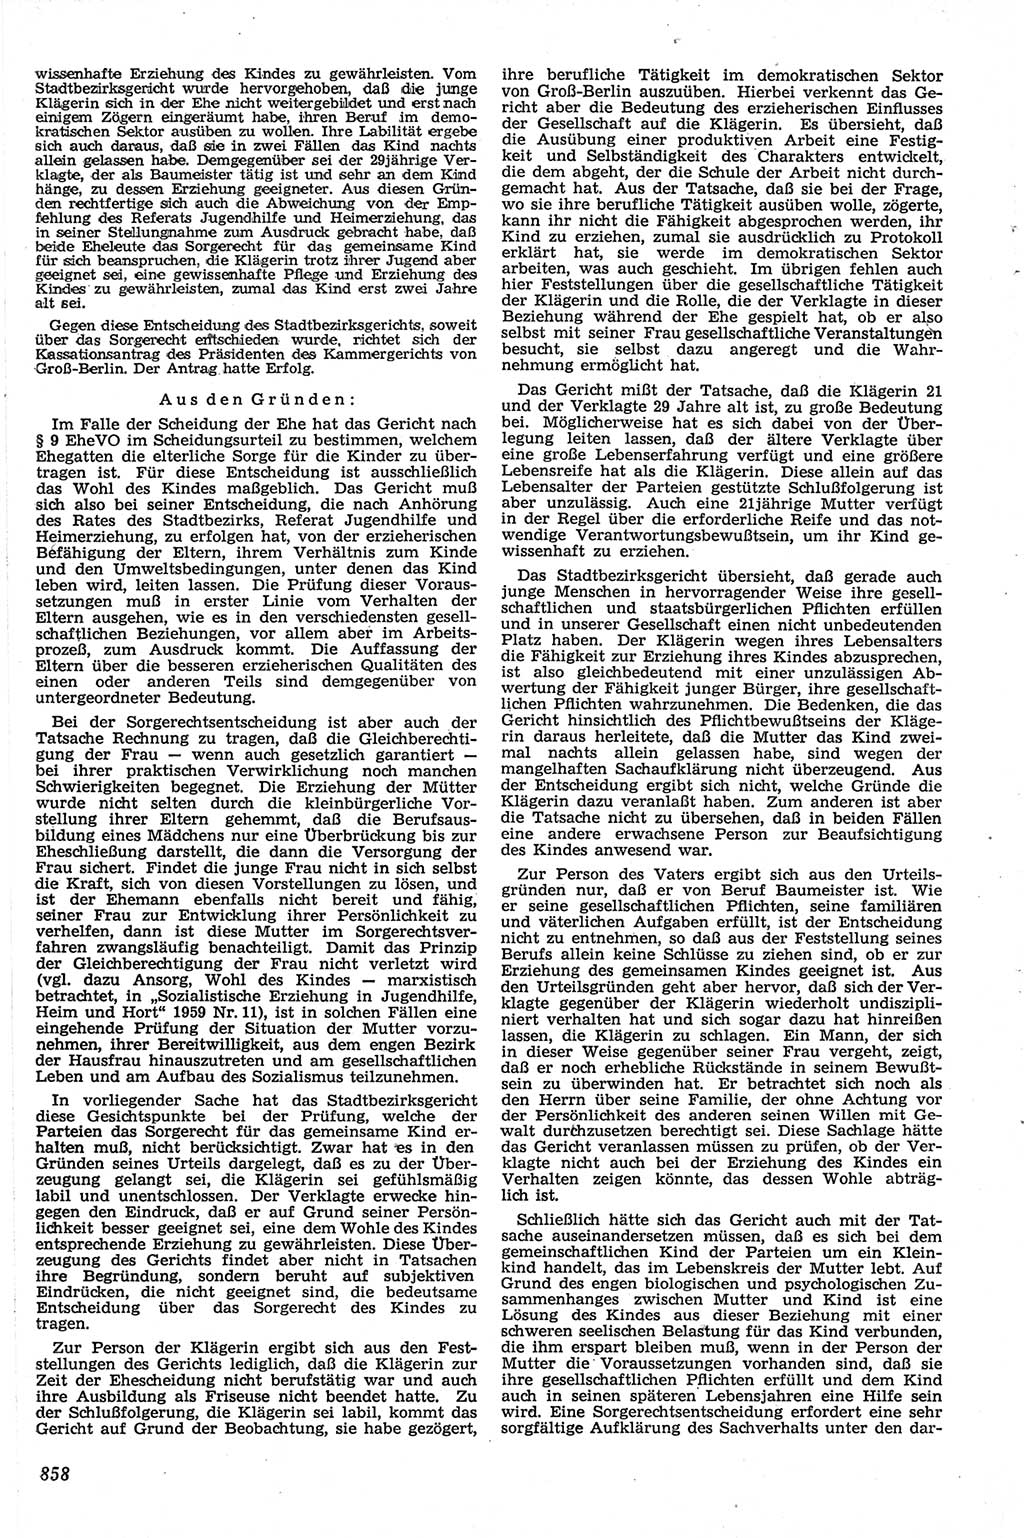 Neue Justiz (NJ), Zeitschrift für Recht und Rechtswissenschaft [Deutsche Demokratische Republik (DDR)], 13. Jahrgang 1959, Seite 858 (NJ DDR 1959, S. 858)